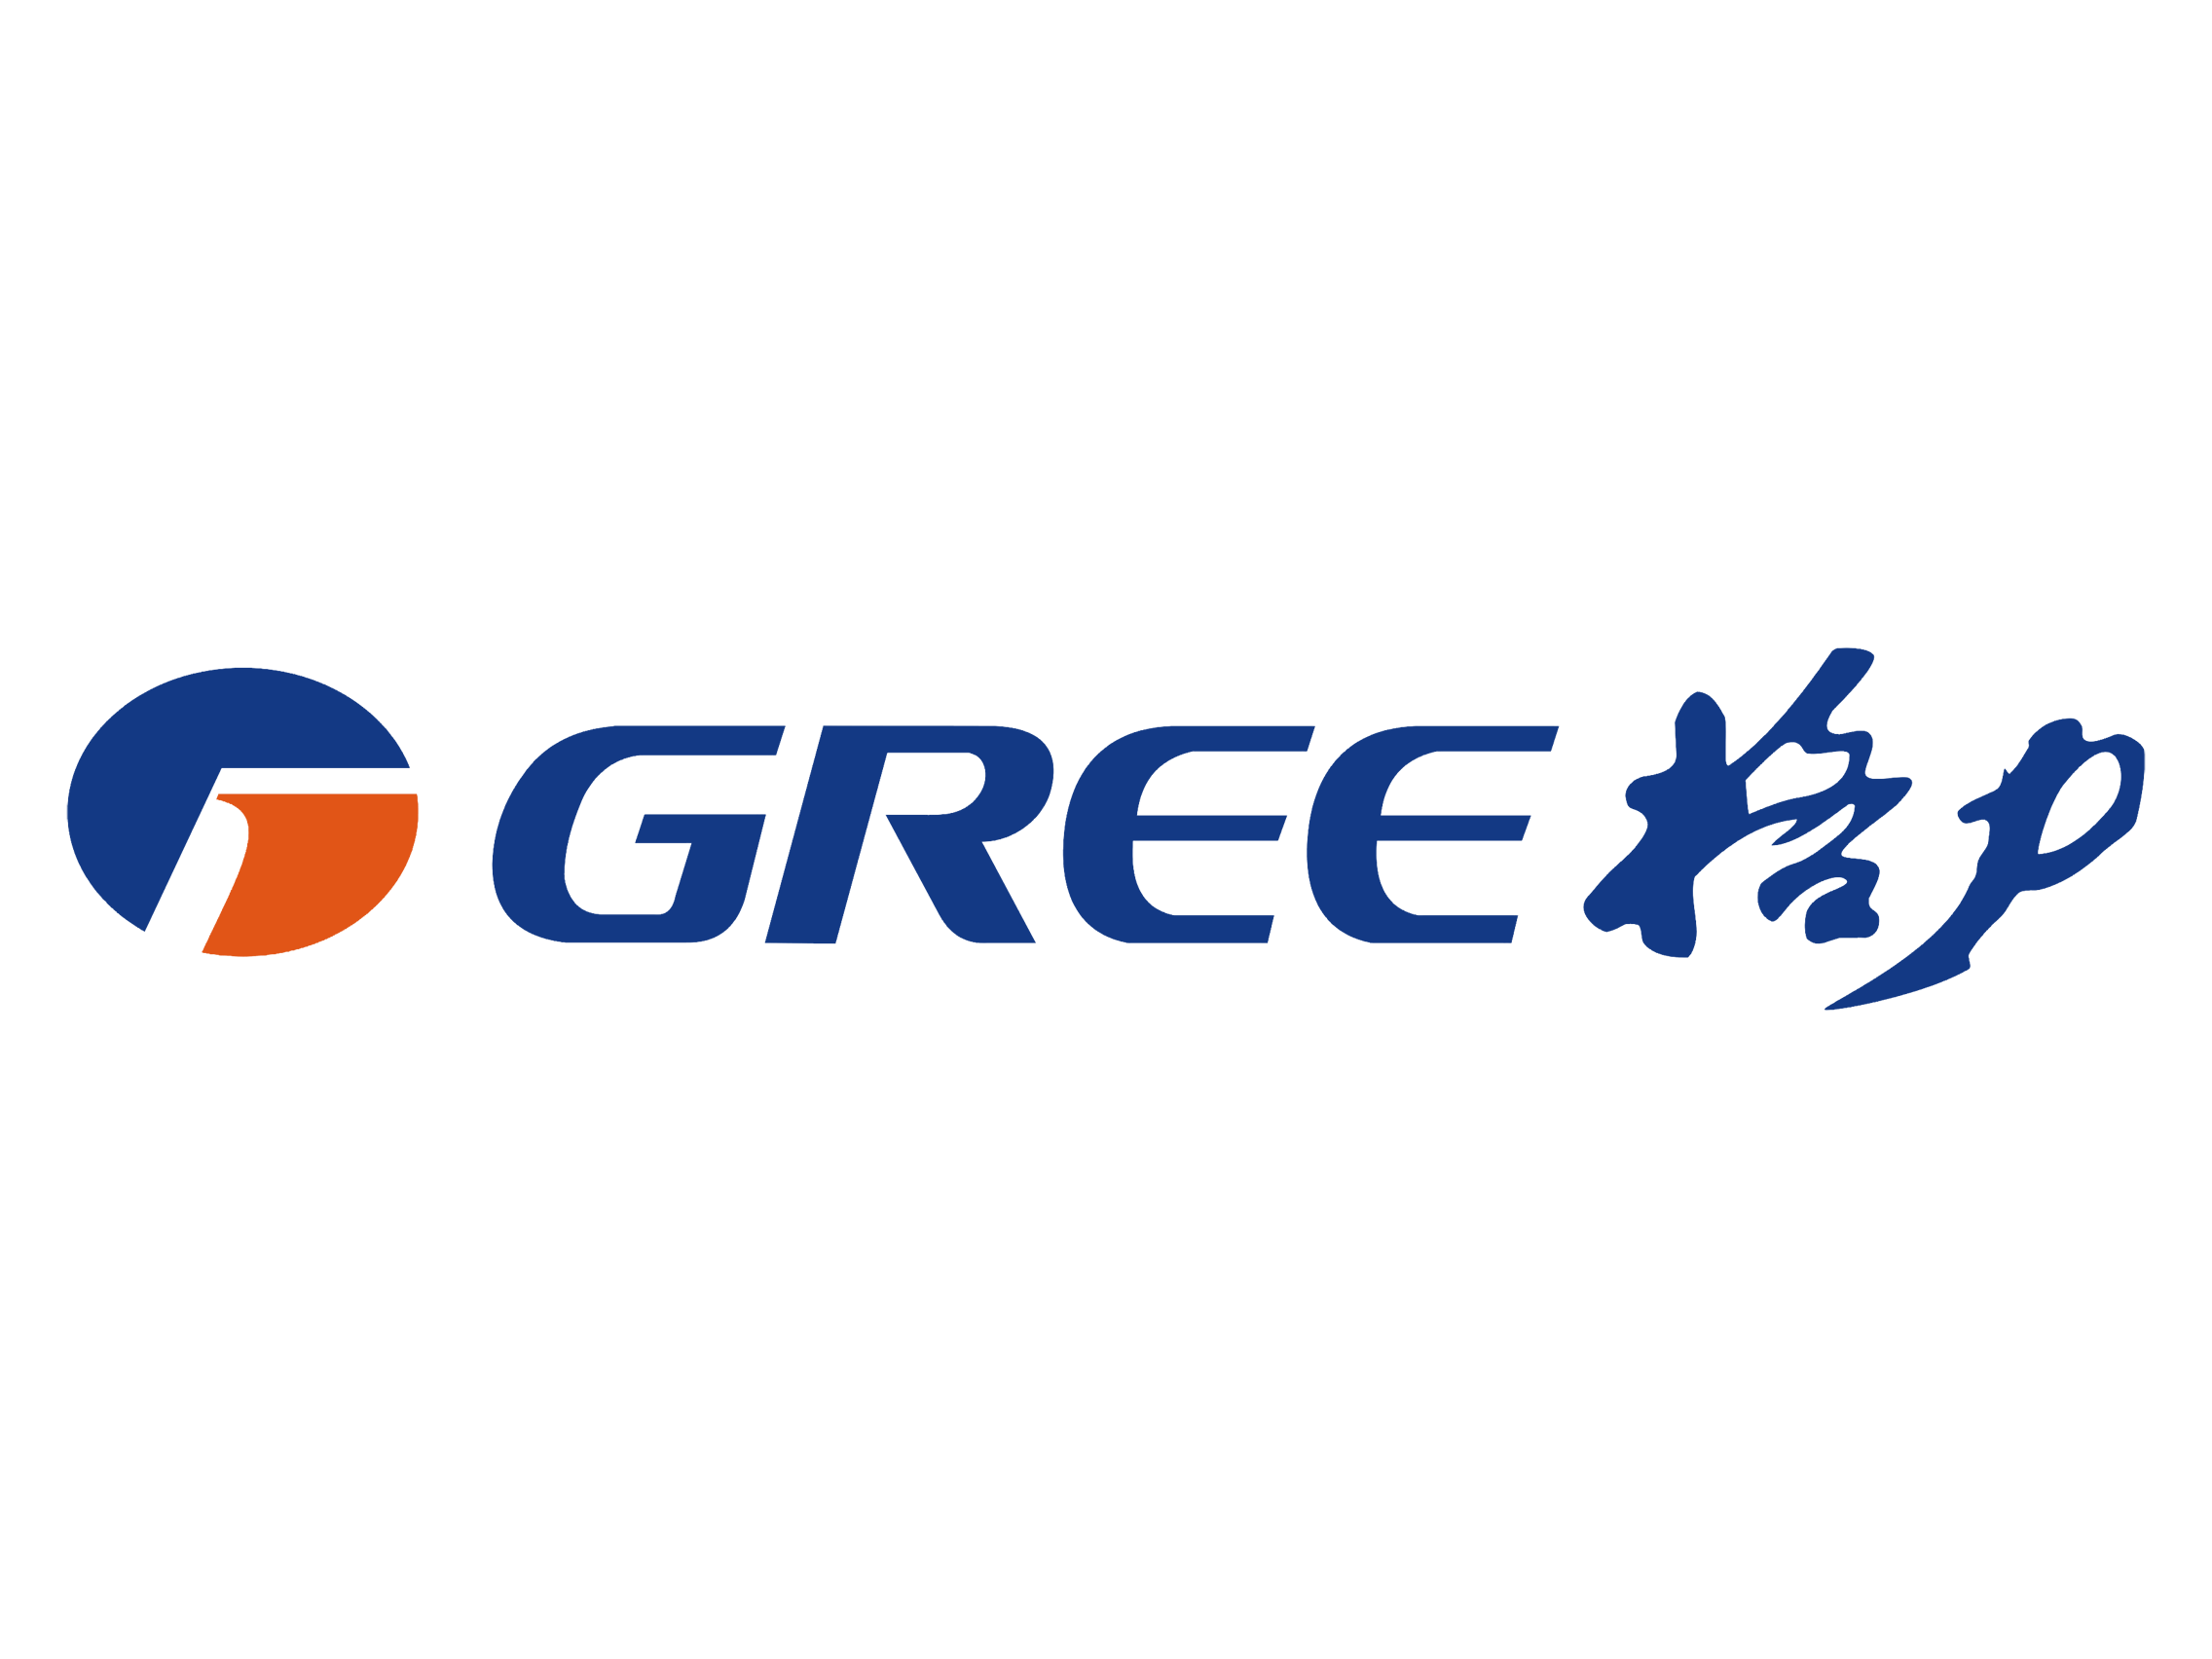 Gree Logo - Gree logo chinese name